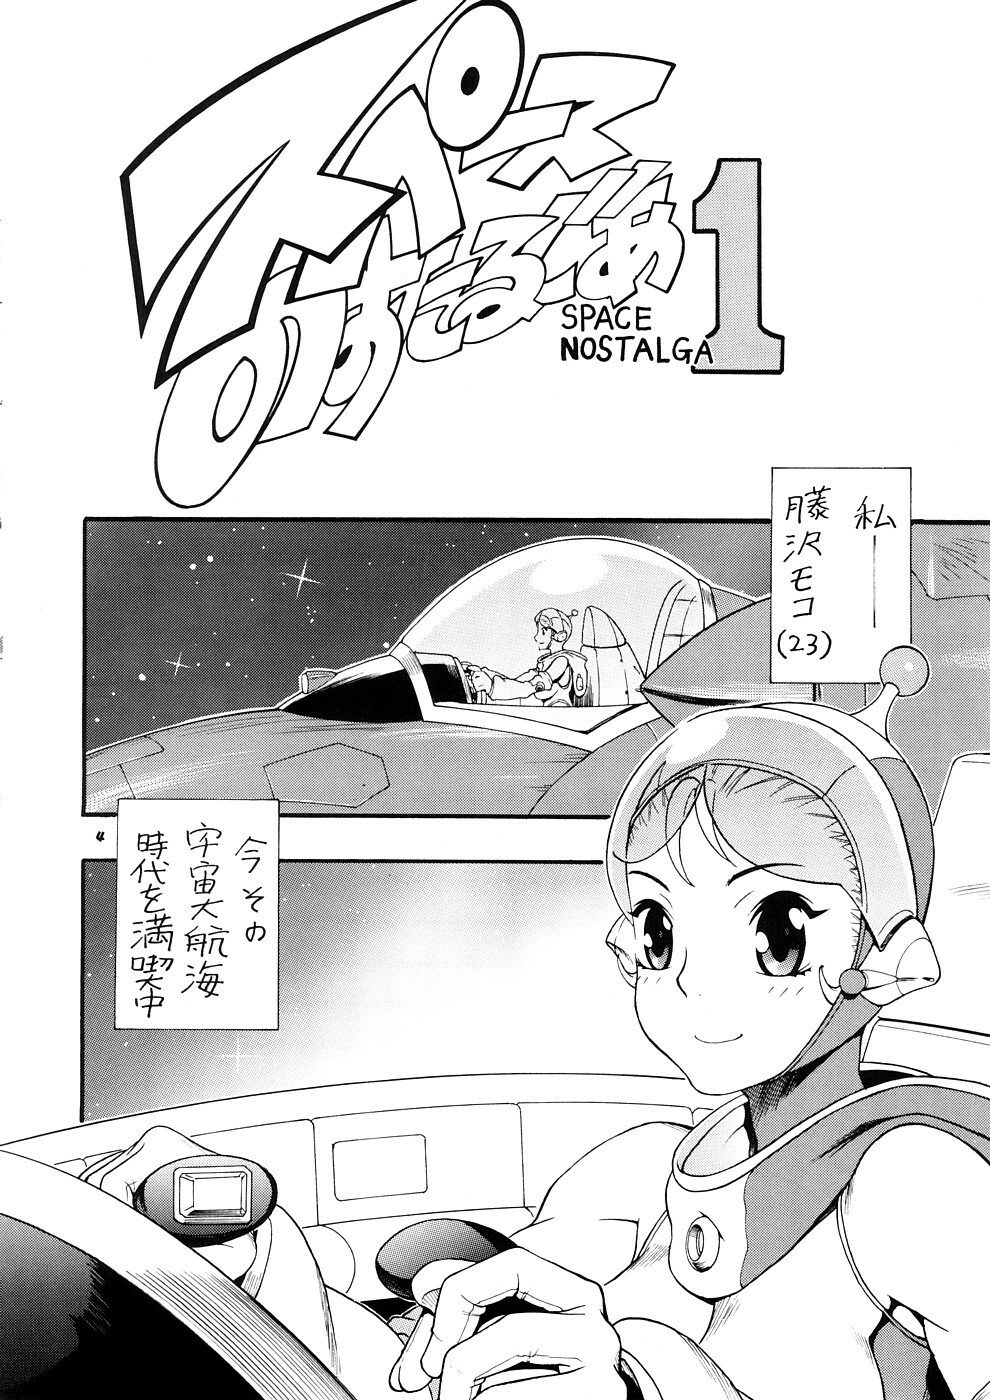 [Sangenshokudou (Chikasato Michiru)] Supēsu no sutaruji a 1 | Space Nostalgia 1 page 3 full